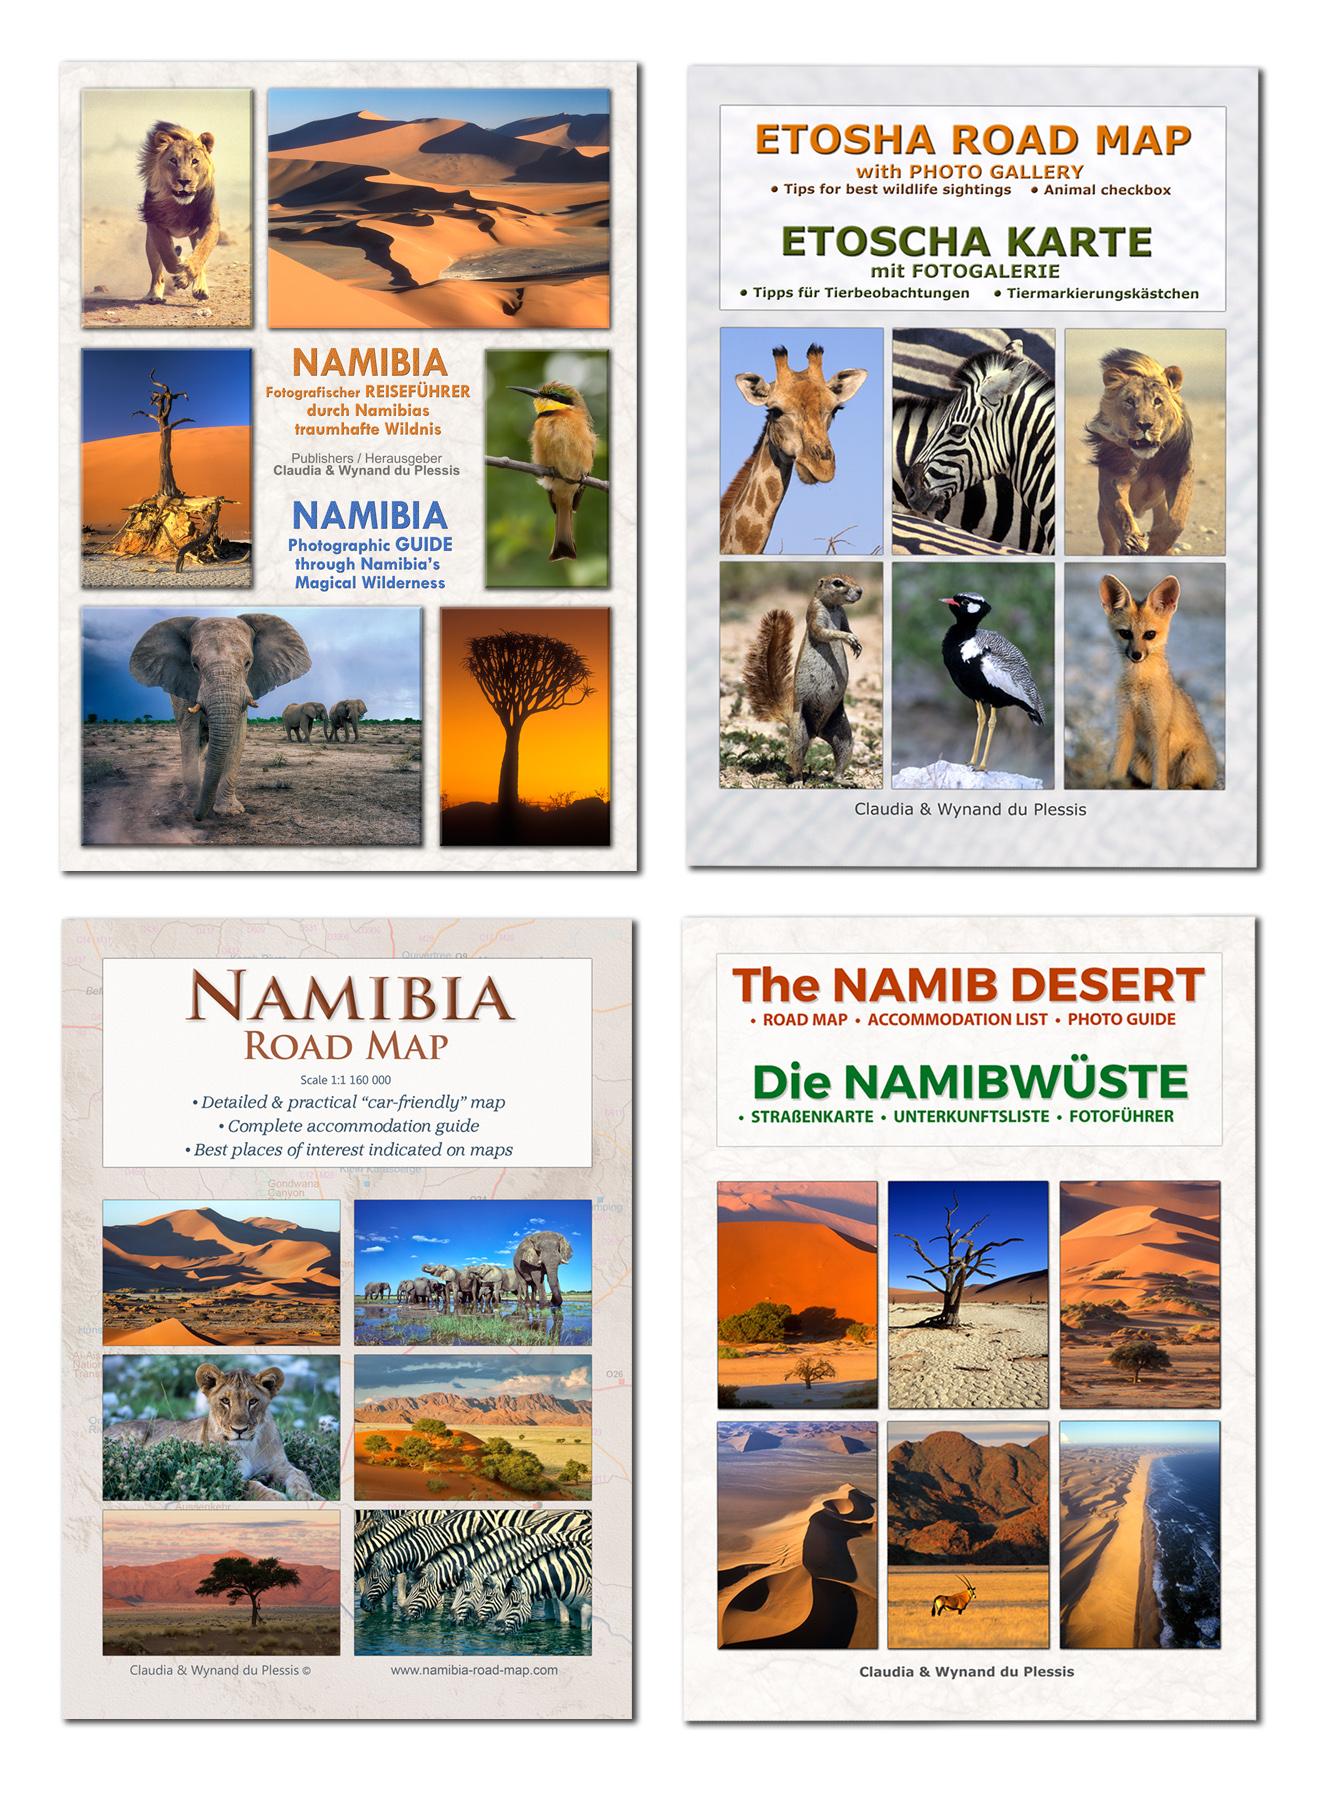 Das komplette Kartenset NAMIBIA Plus (4-teilig) Detaillierte NAMIBIA Straßenkarte + ETOSCHA Karte (mit Fotogalerie der Wildtiere) + Karte der NAMIBWÜSTE (mit Fotos & Fotopunkten der schönsten Orte) + Fotografischer Reiseführer NAMIBIA - Praktische ...